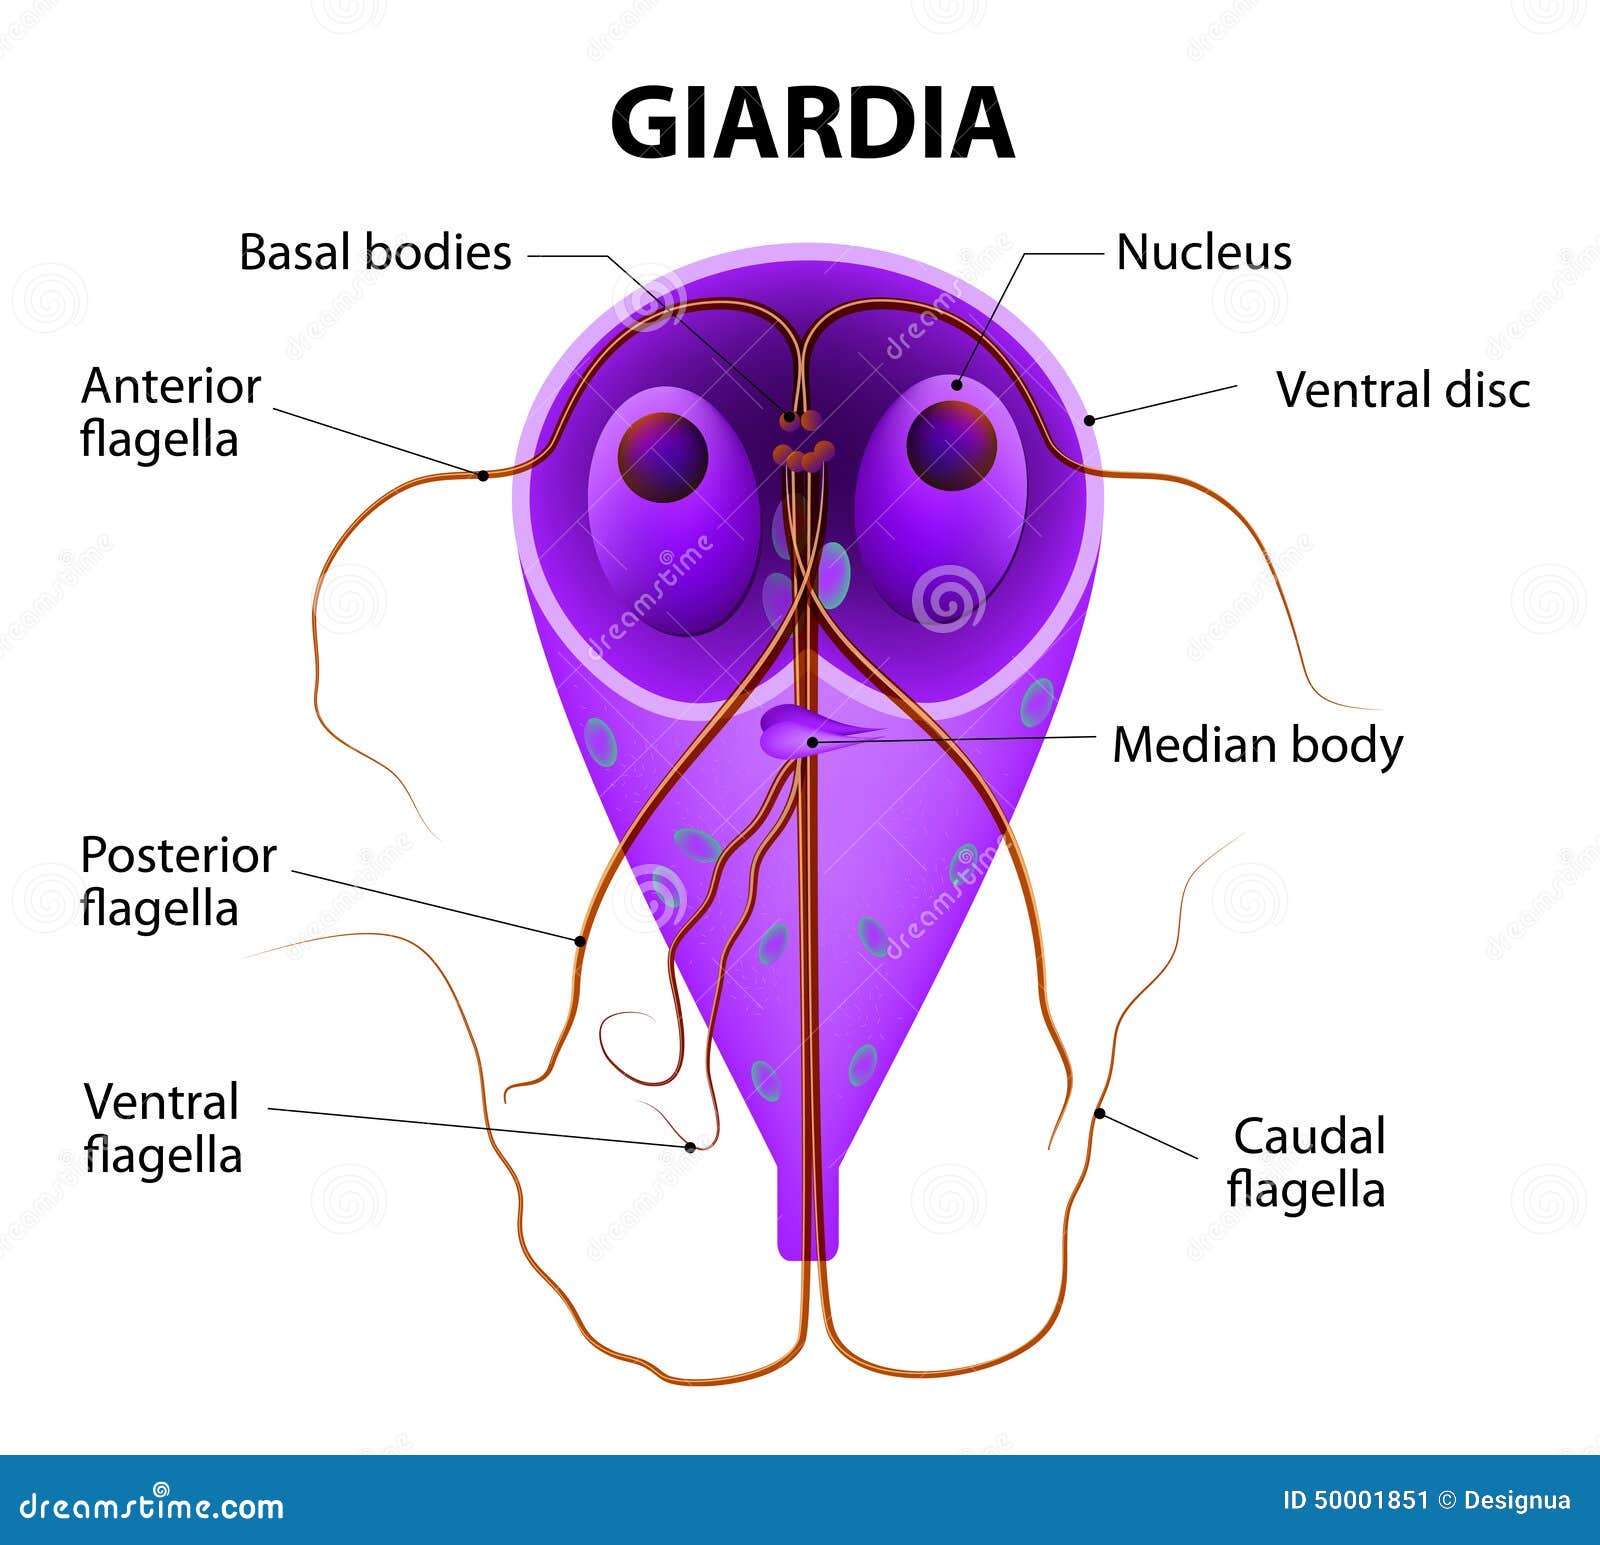 giardia parasite treatment for humans